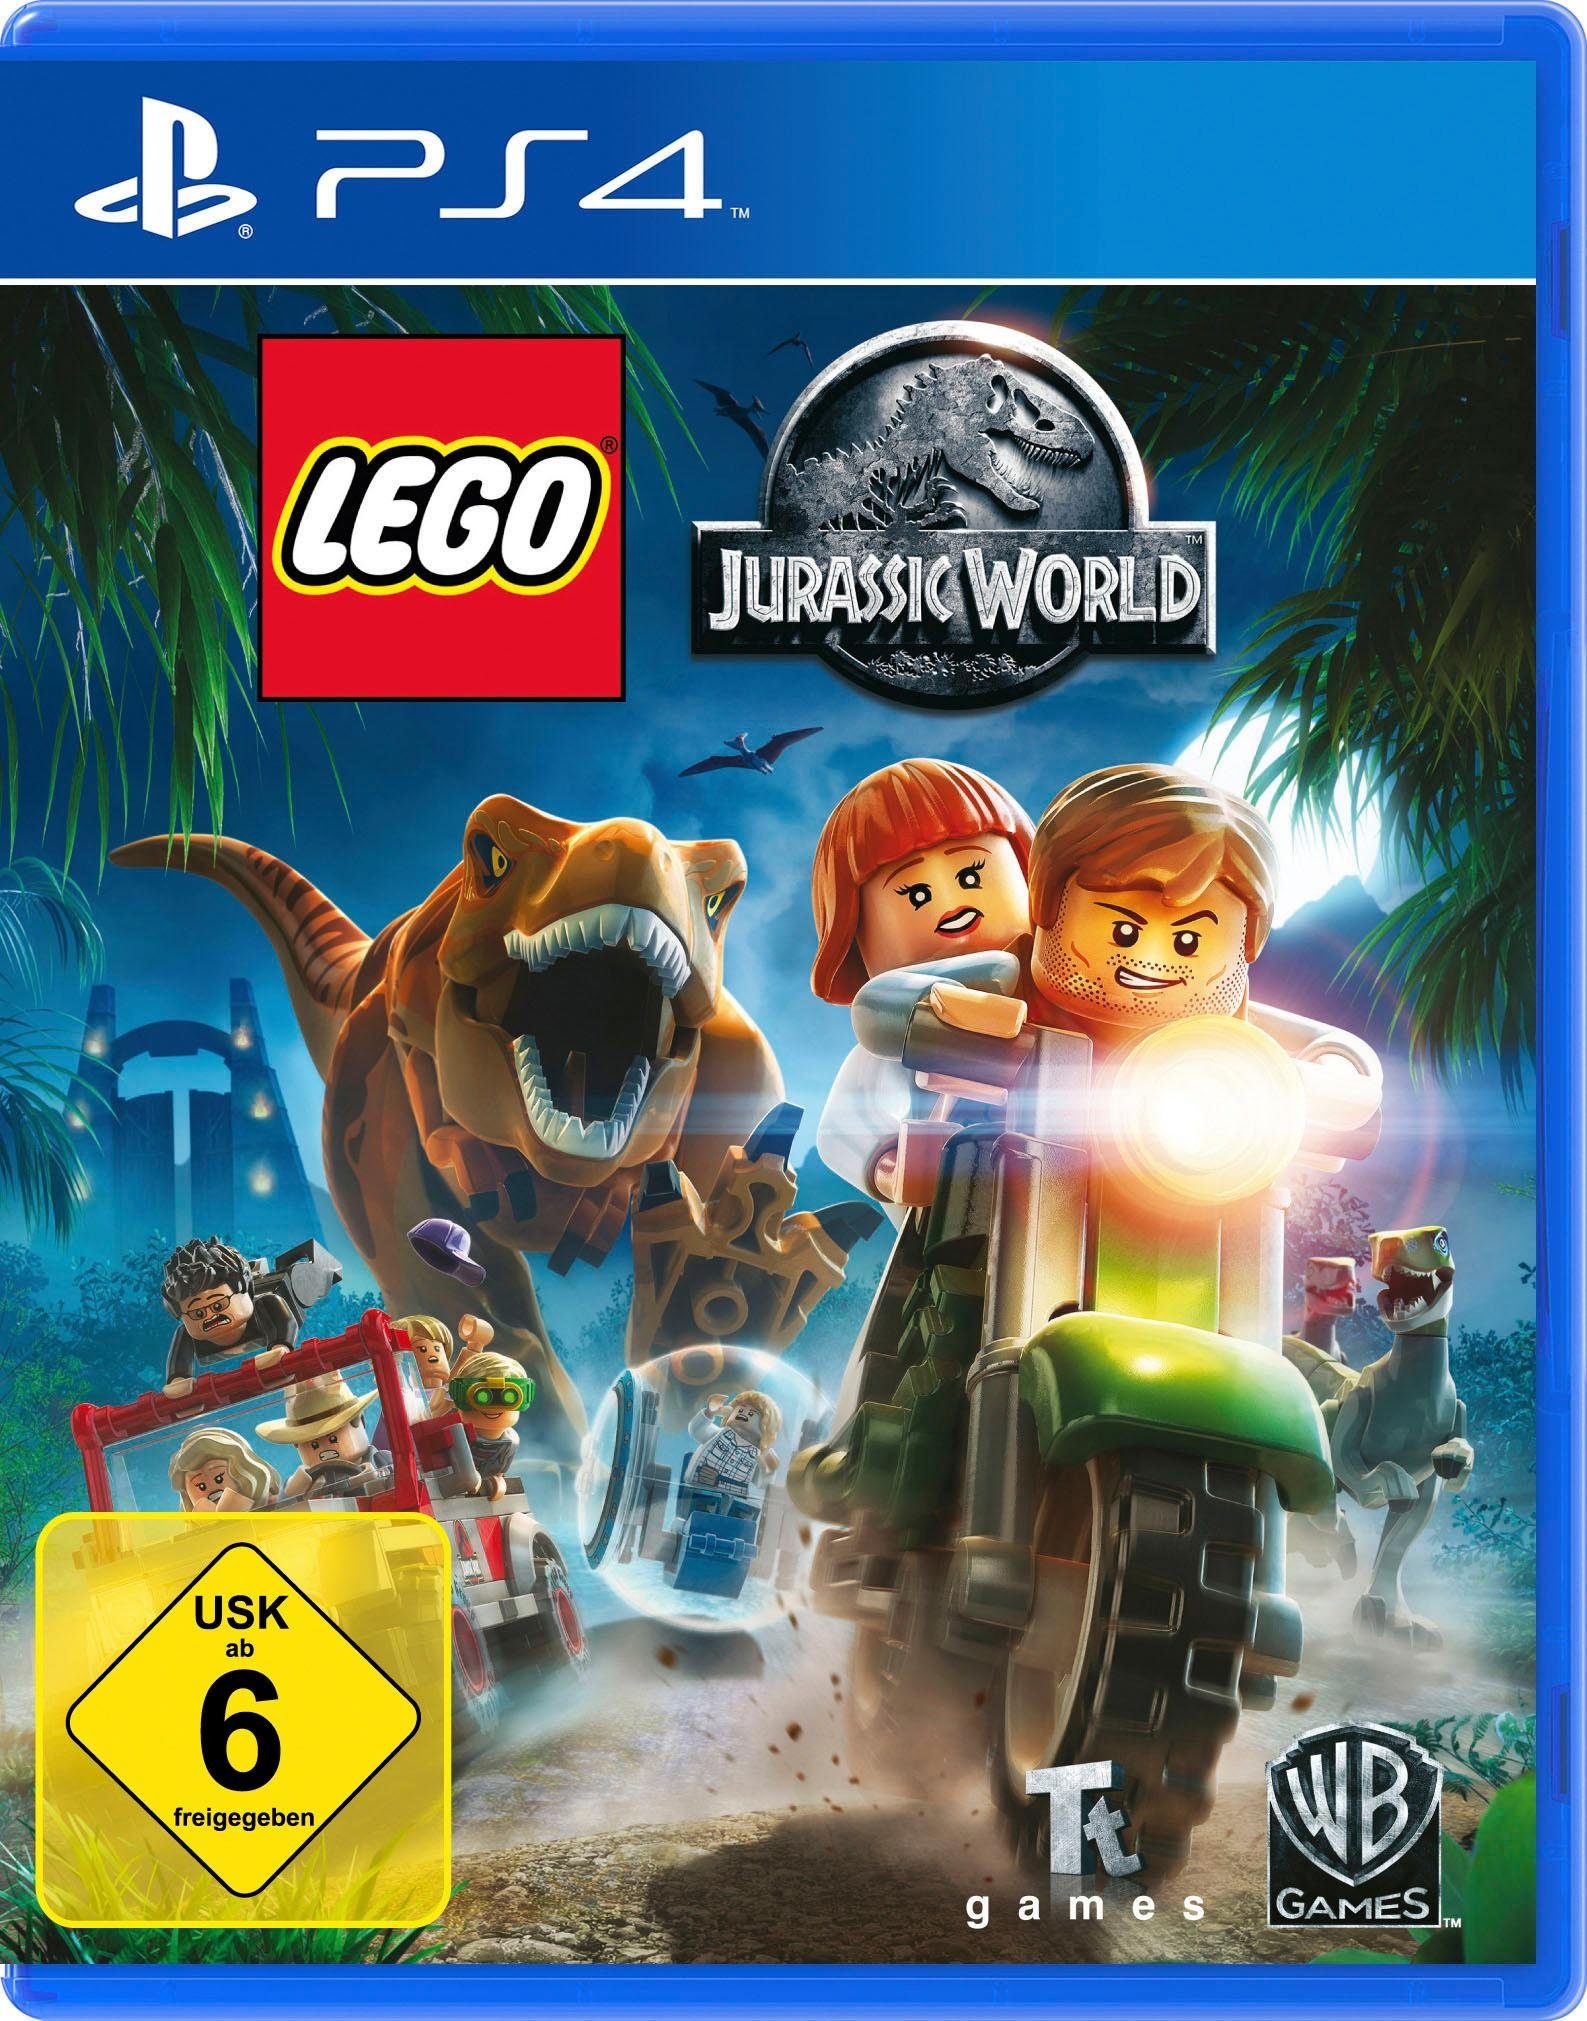 LEGO Jurassic World PlayStation 4, Software Pyramide online kaufen | OTTO